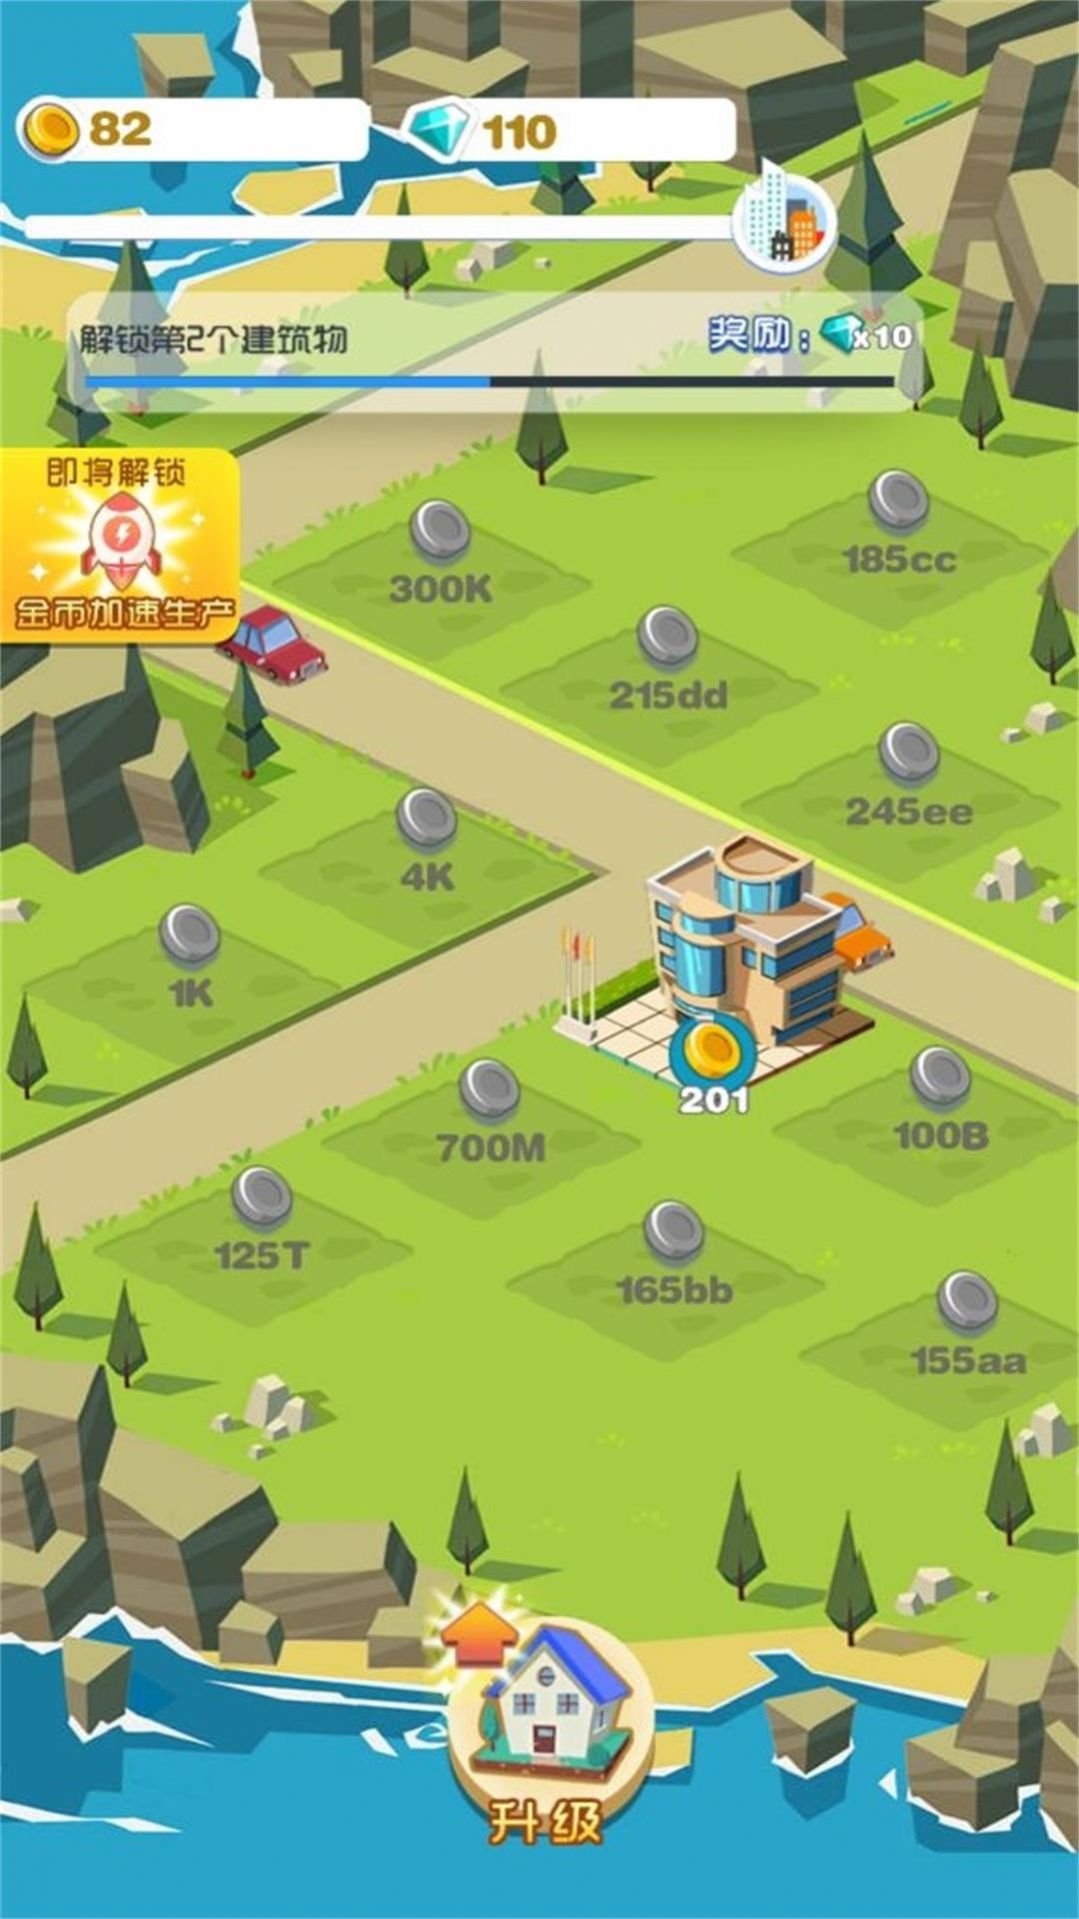 建设城镇梦工场游戏图2